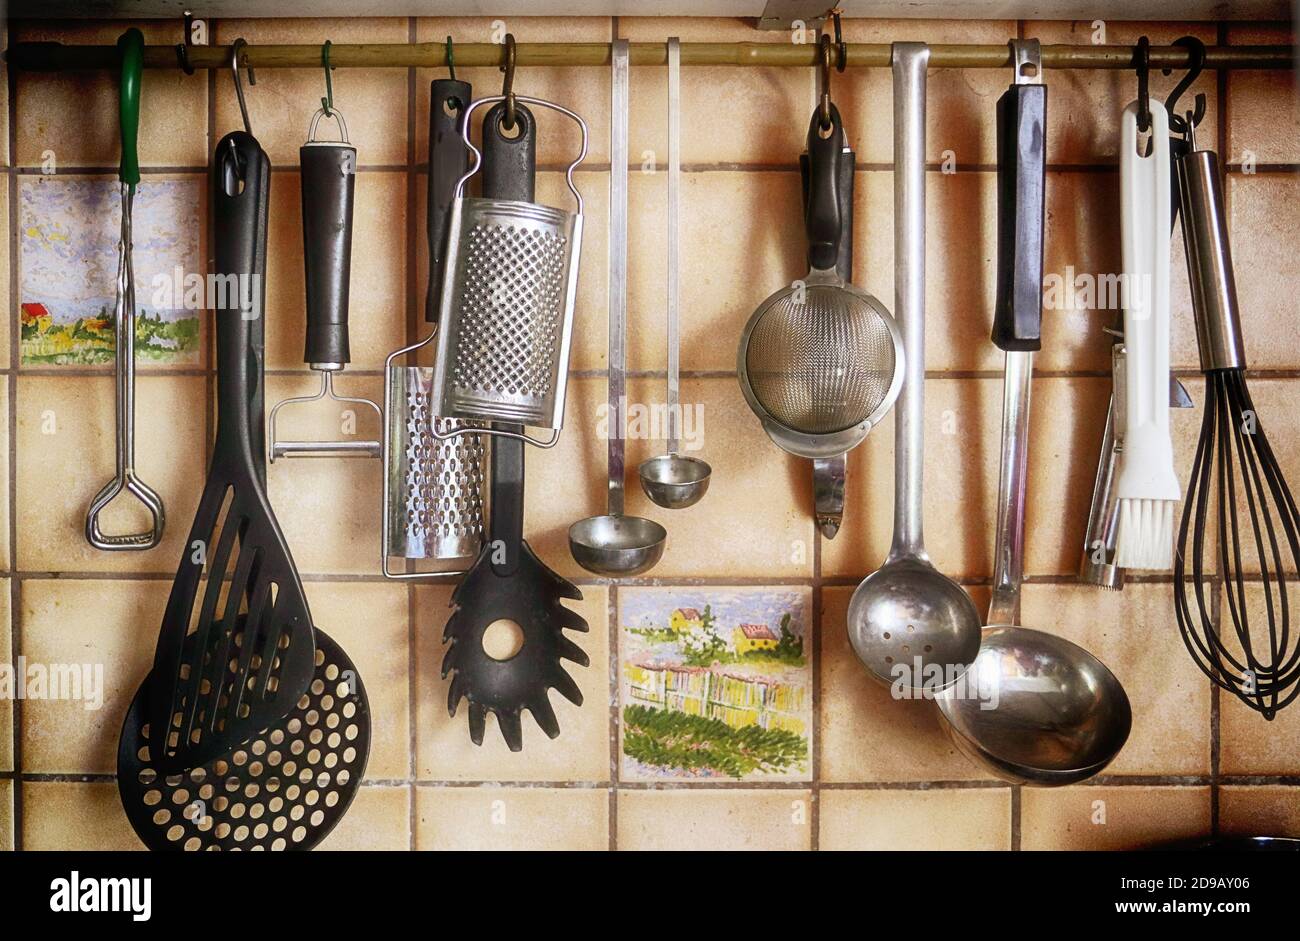 ustensiles de cuisine suspendus dans la cuisine prêts à préparer des aliments Banque D'Images